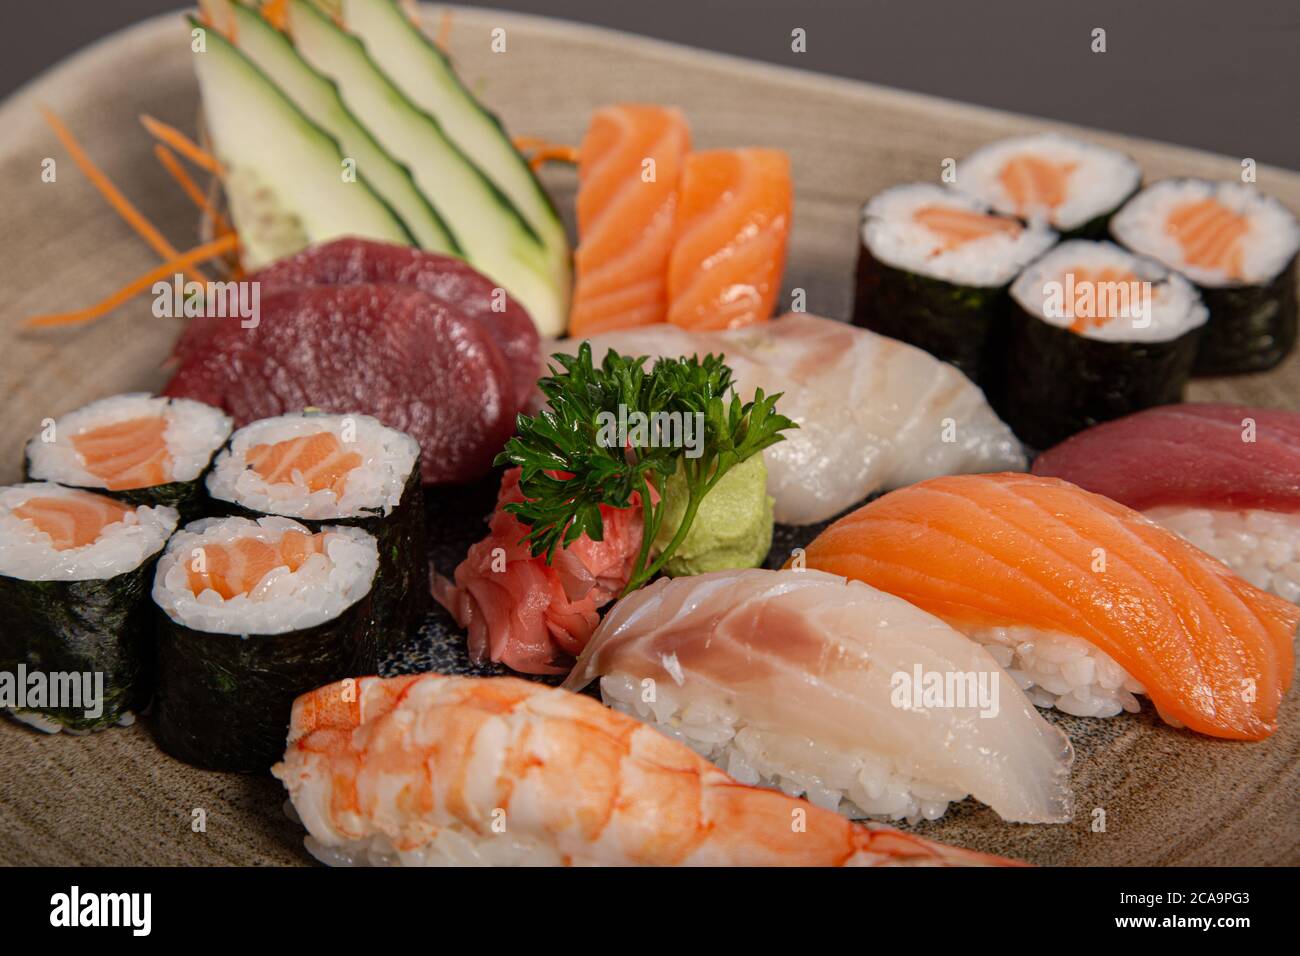 Piatto di sushi e sashimi assortiti. Immagine isolata. Foto Stock